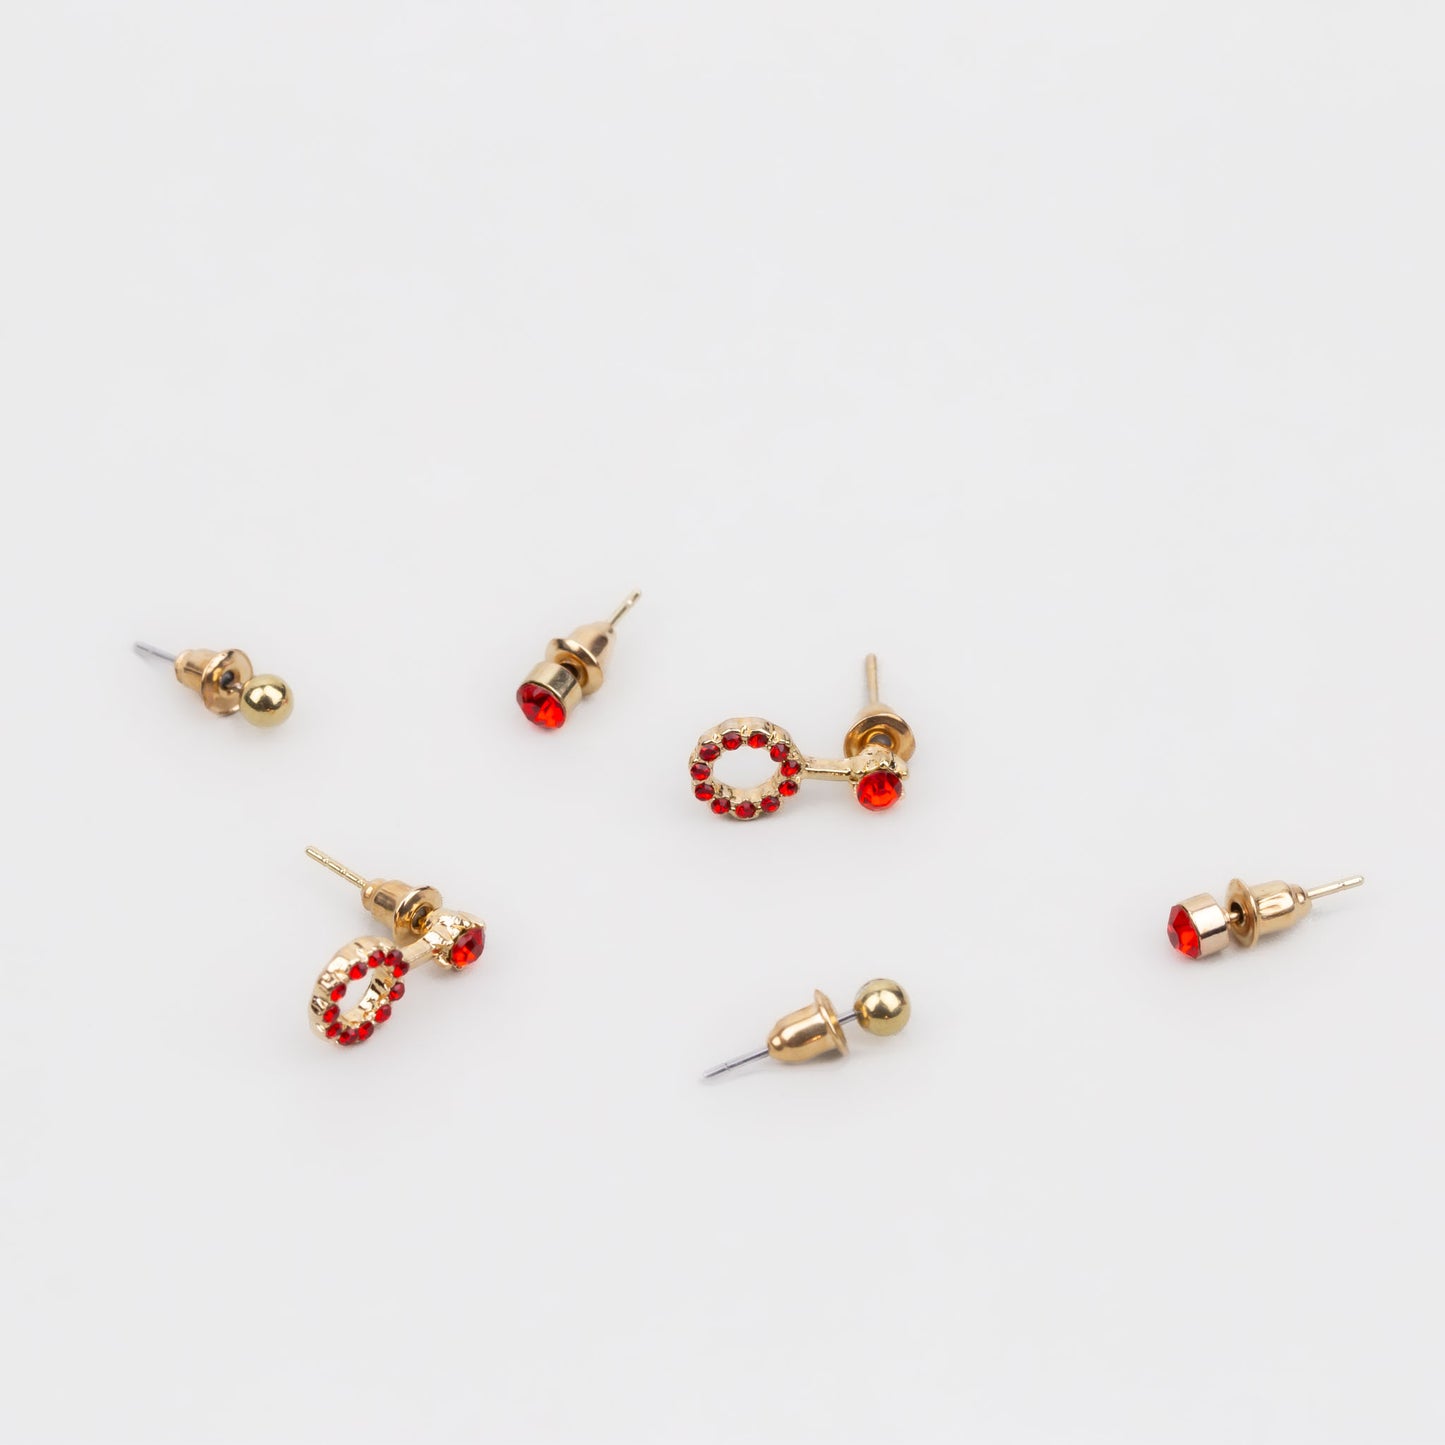 Cercei mici aurii discreți cu formă de amuletă și pietre, set 3 perechi - Roșu